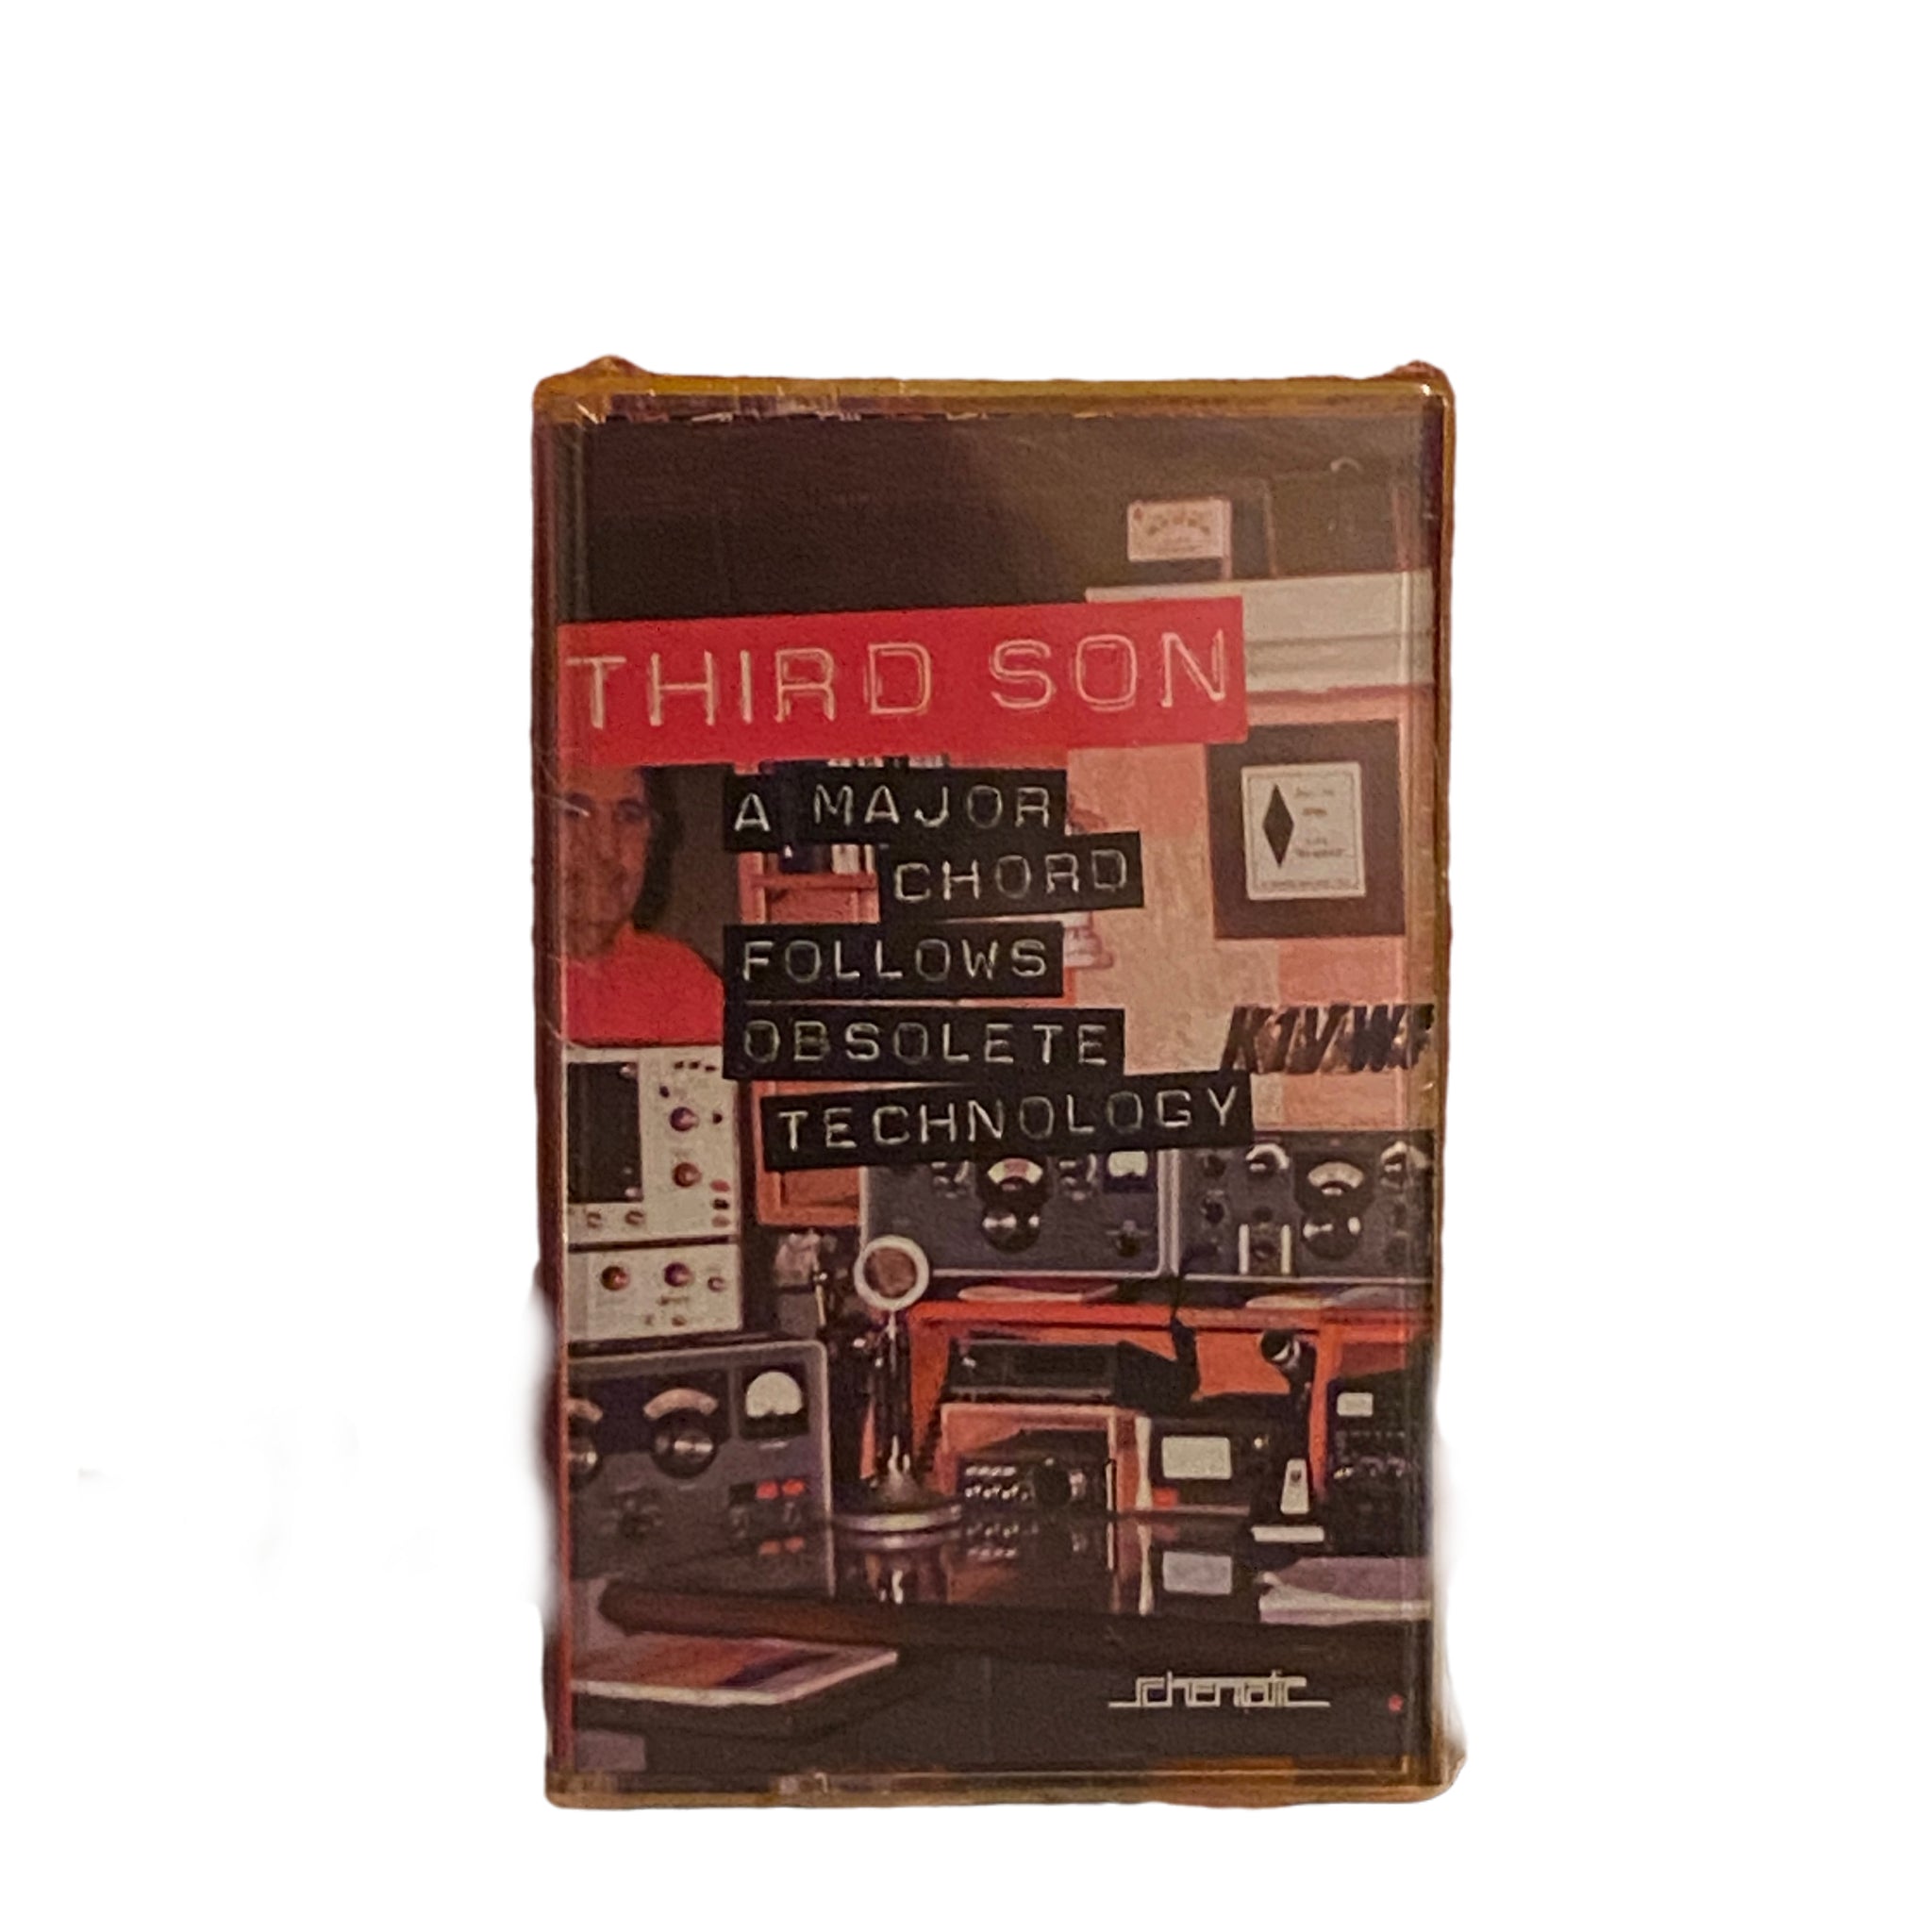 Third Son - A major chord follows obsolete technology